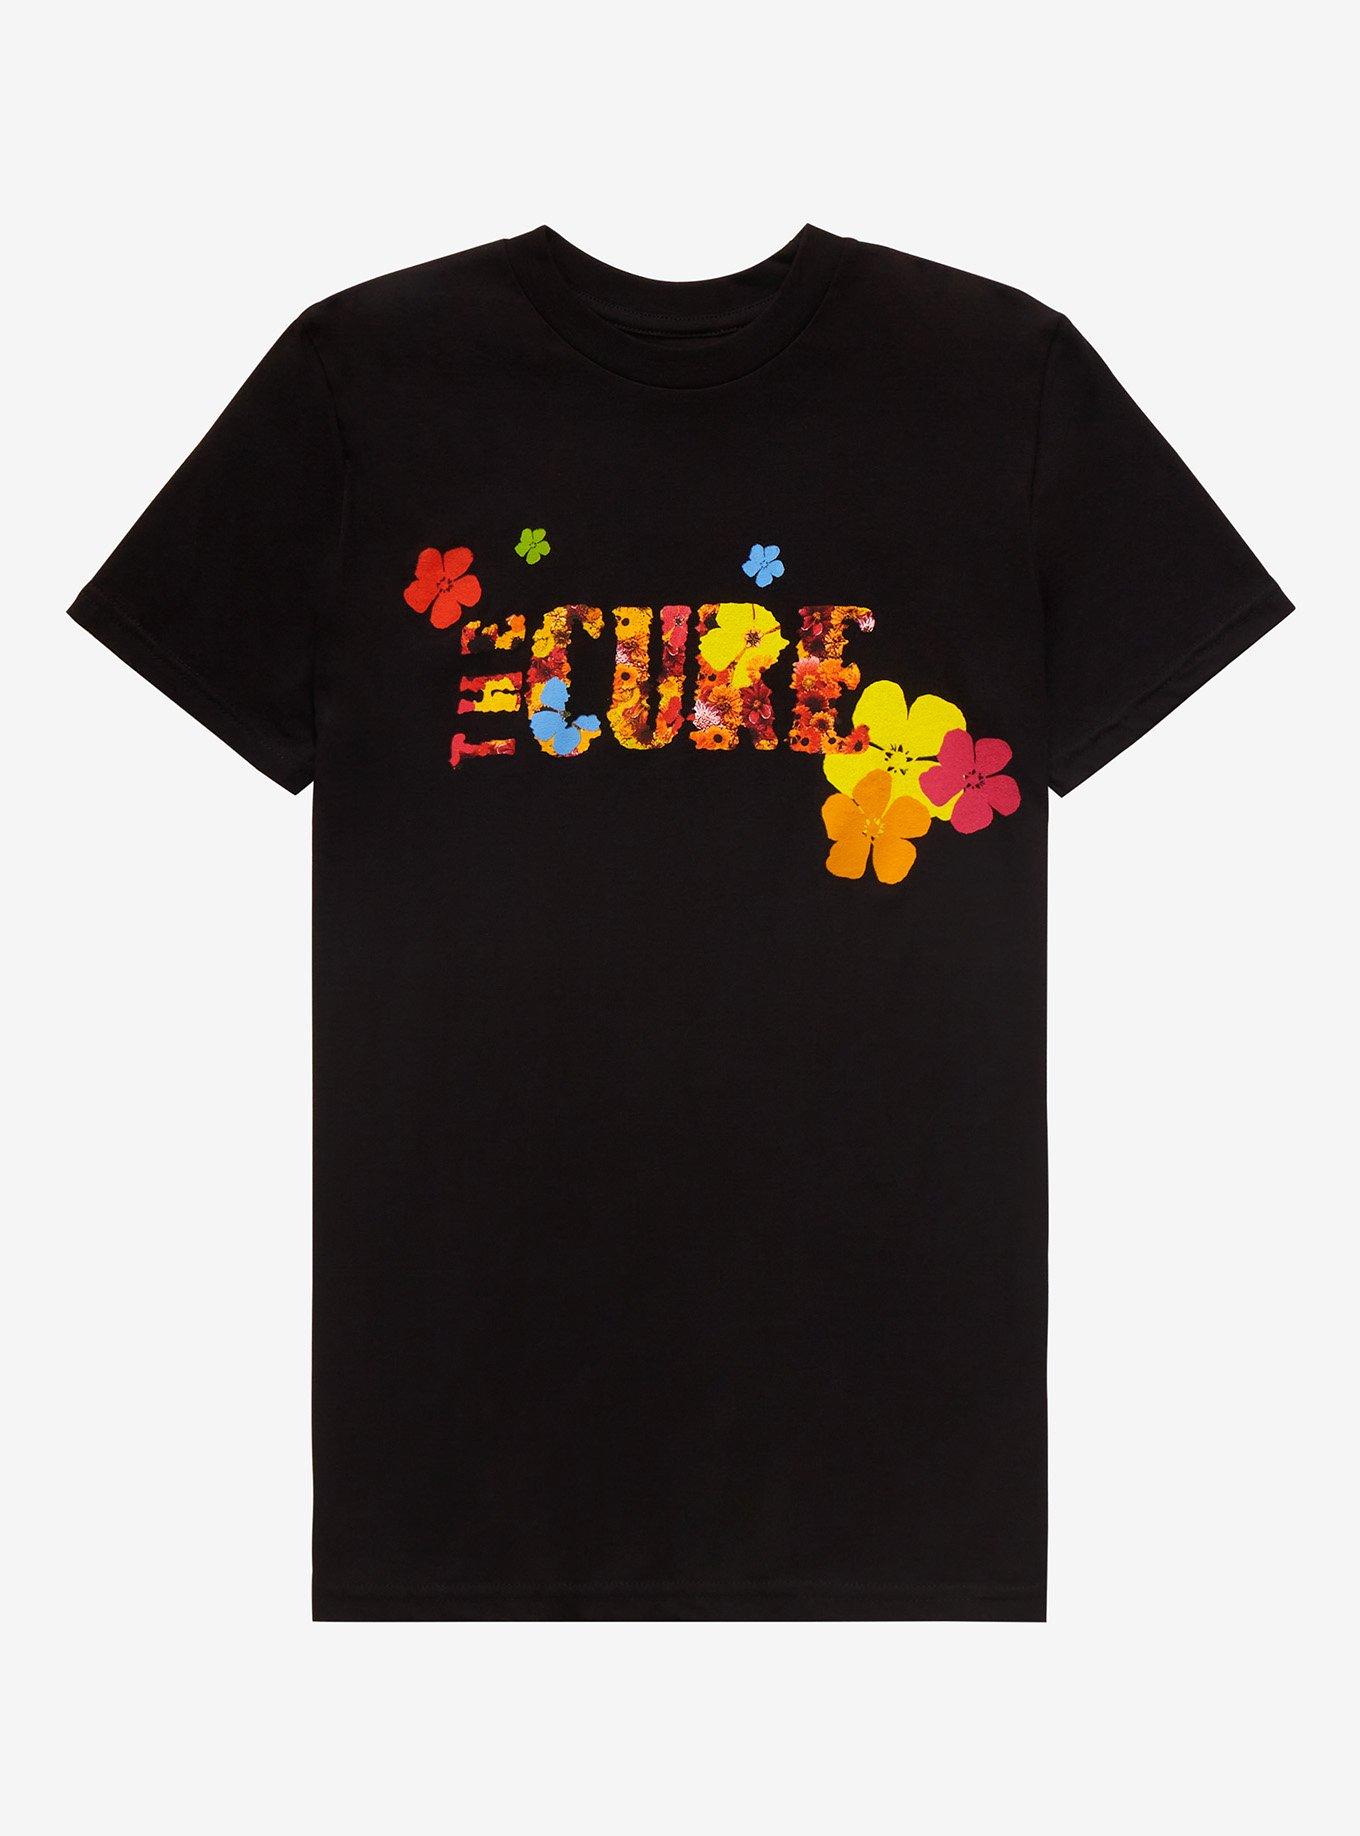 The Cure Flowers Boyfriend Fit Girls T-Shirt, BLACK, hi-res